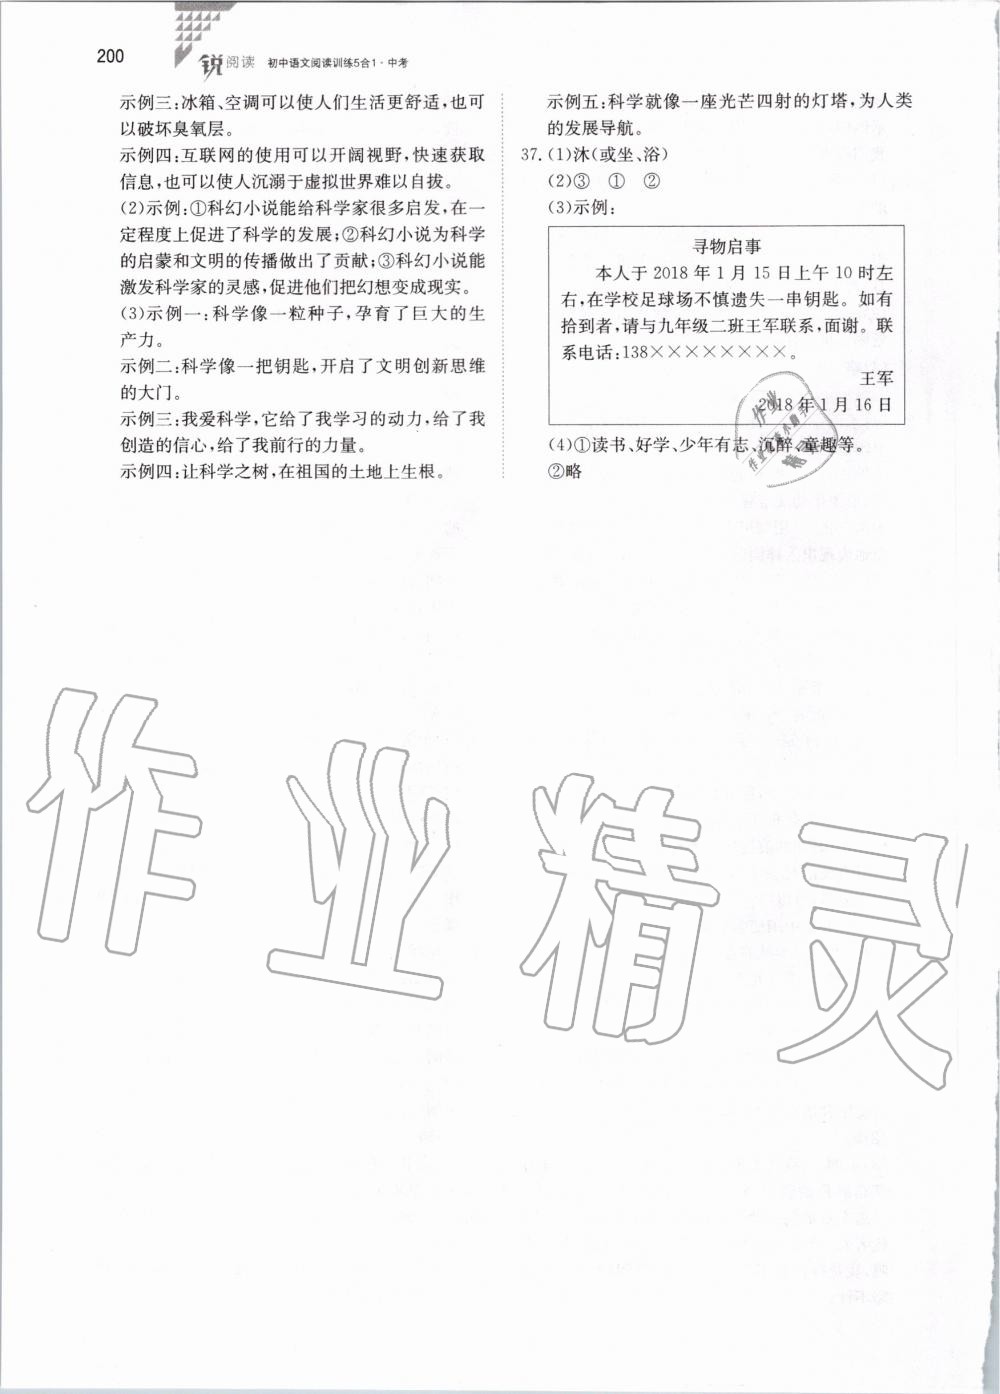 2019年锐阅读初中语文阅读训练5合1中考 第46页